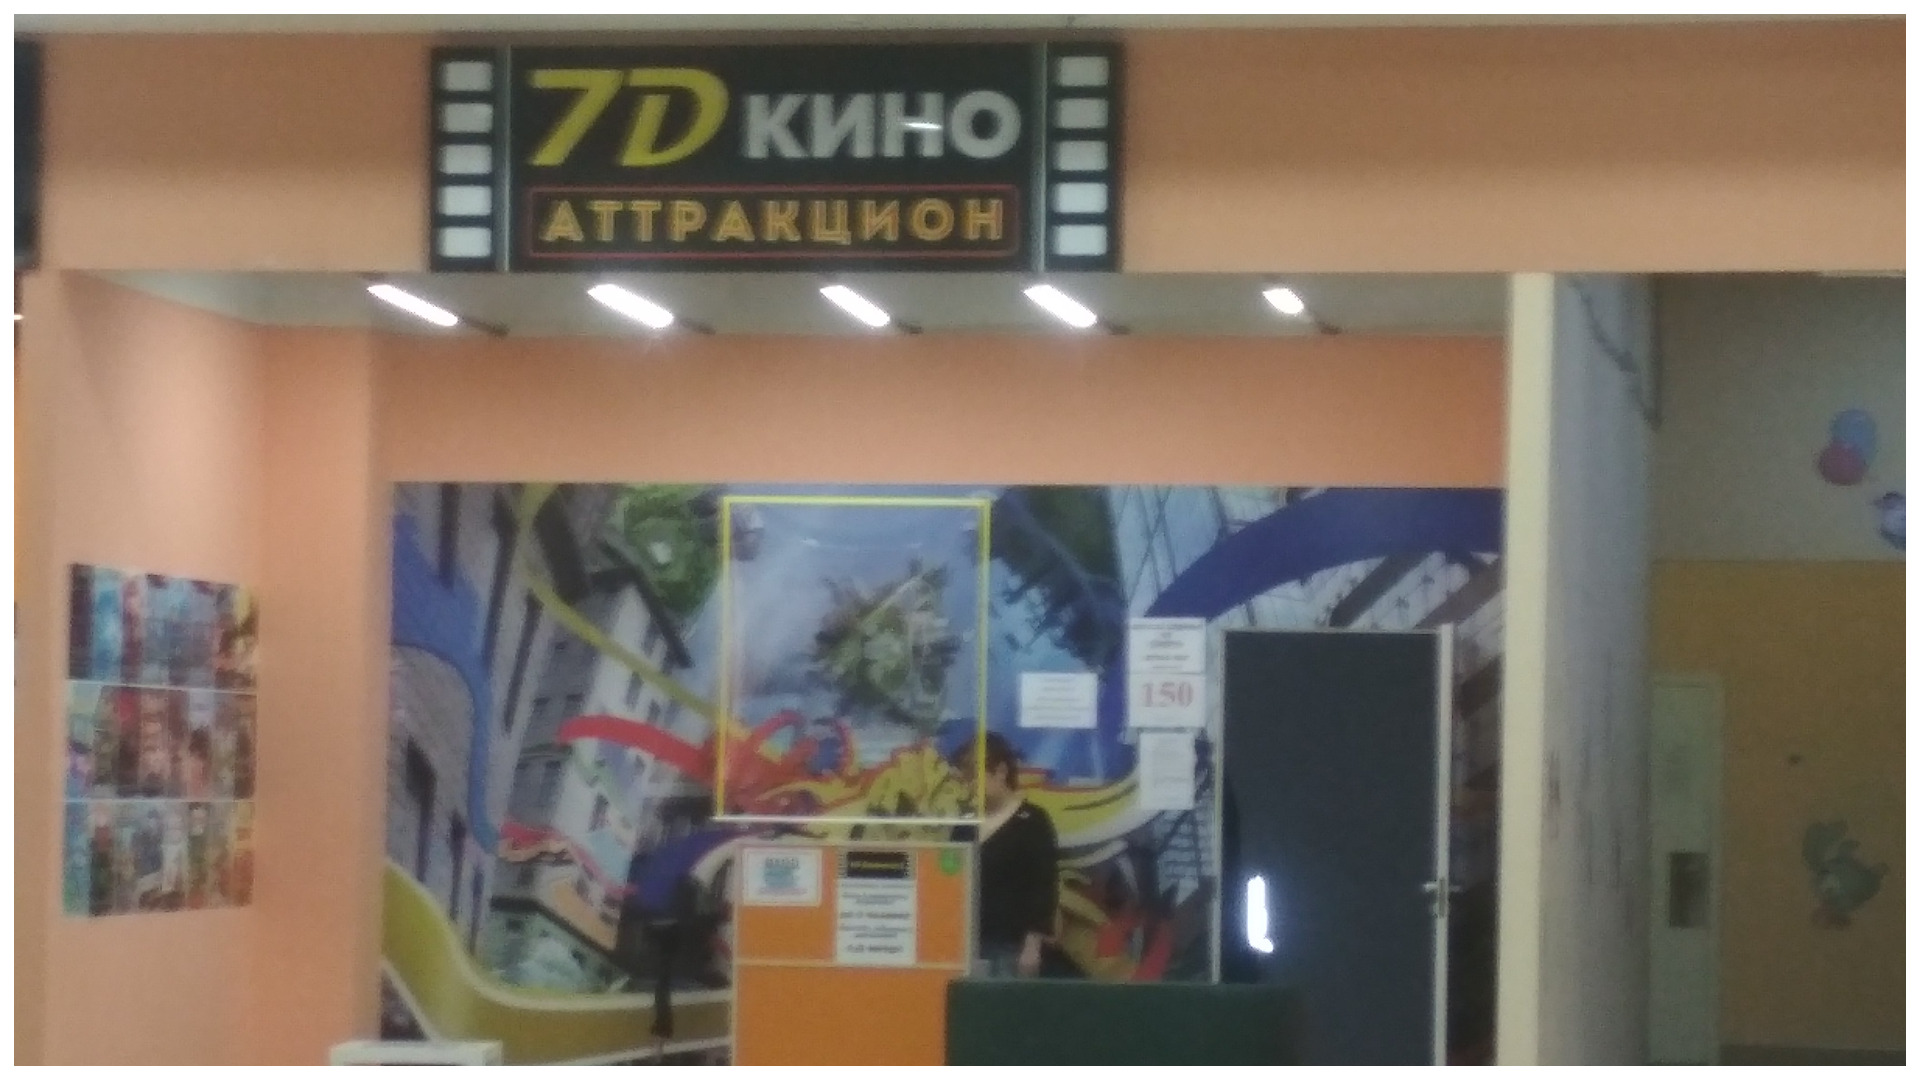 Кино аттракцион в Торговом центре "Тополь".